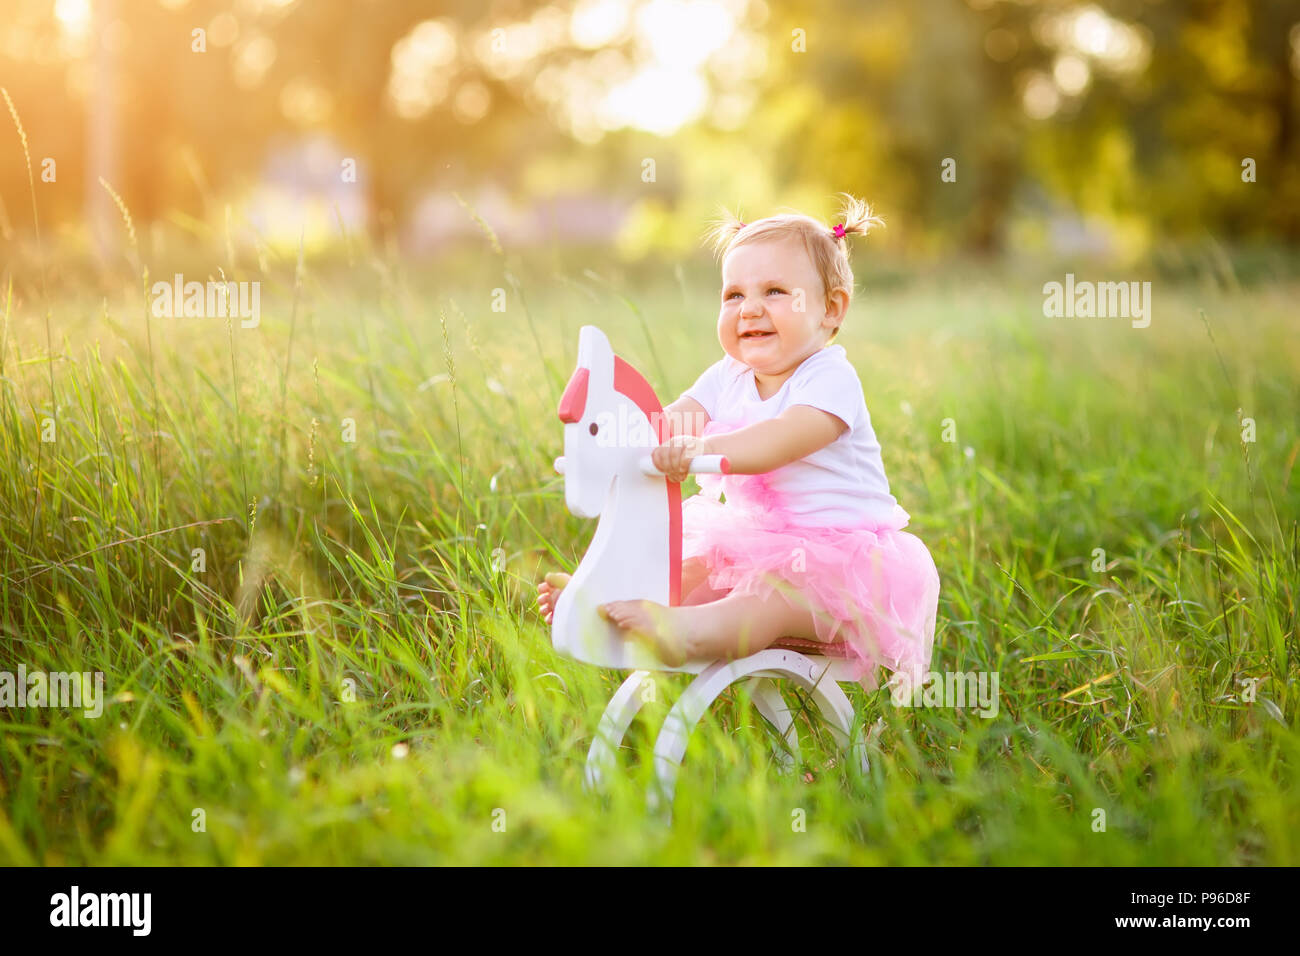 Belle petite fille en robe rose équitation sur cheval jouet en bois à l'extérieur Banque D'Images